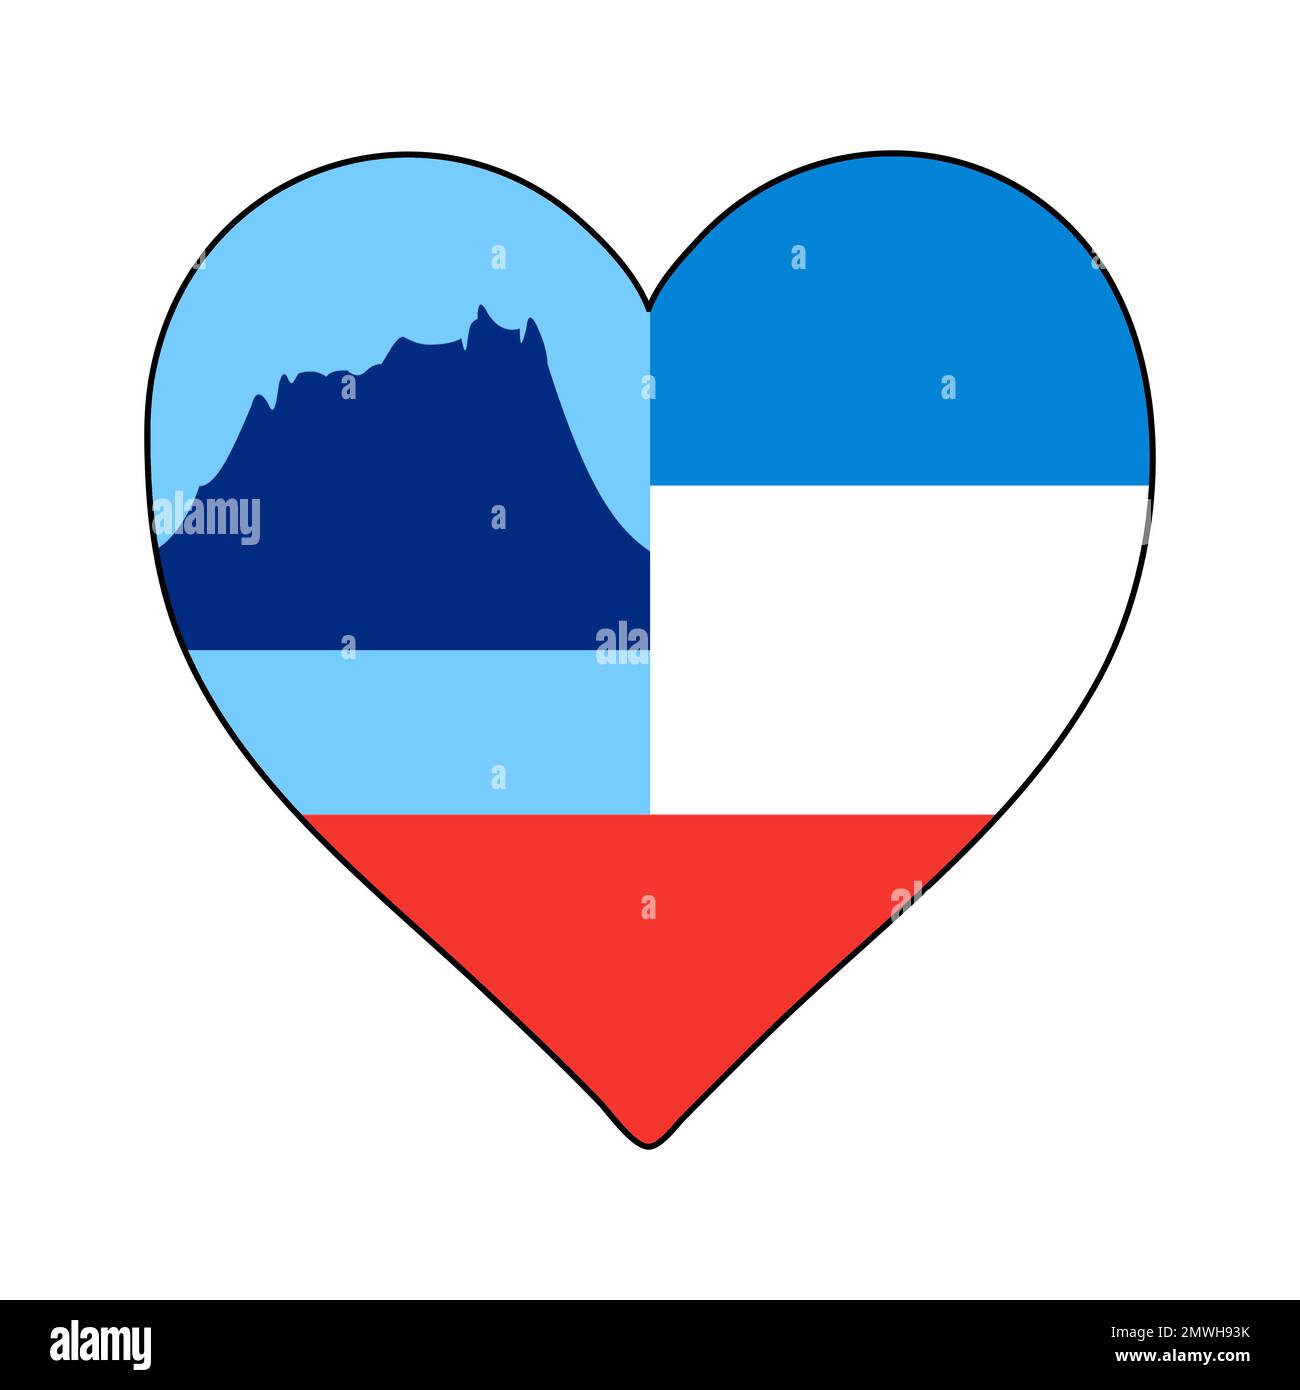 Sabah Heart Shape Flag. Ama Sabah. Stato in Malesia. Visita la Malesia. Disegno grafico dell'illustrazione vettoriale. Illustrazione Vettoriale